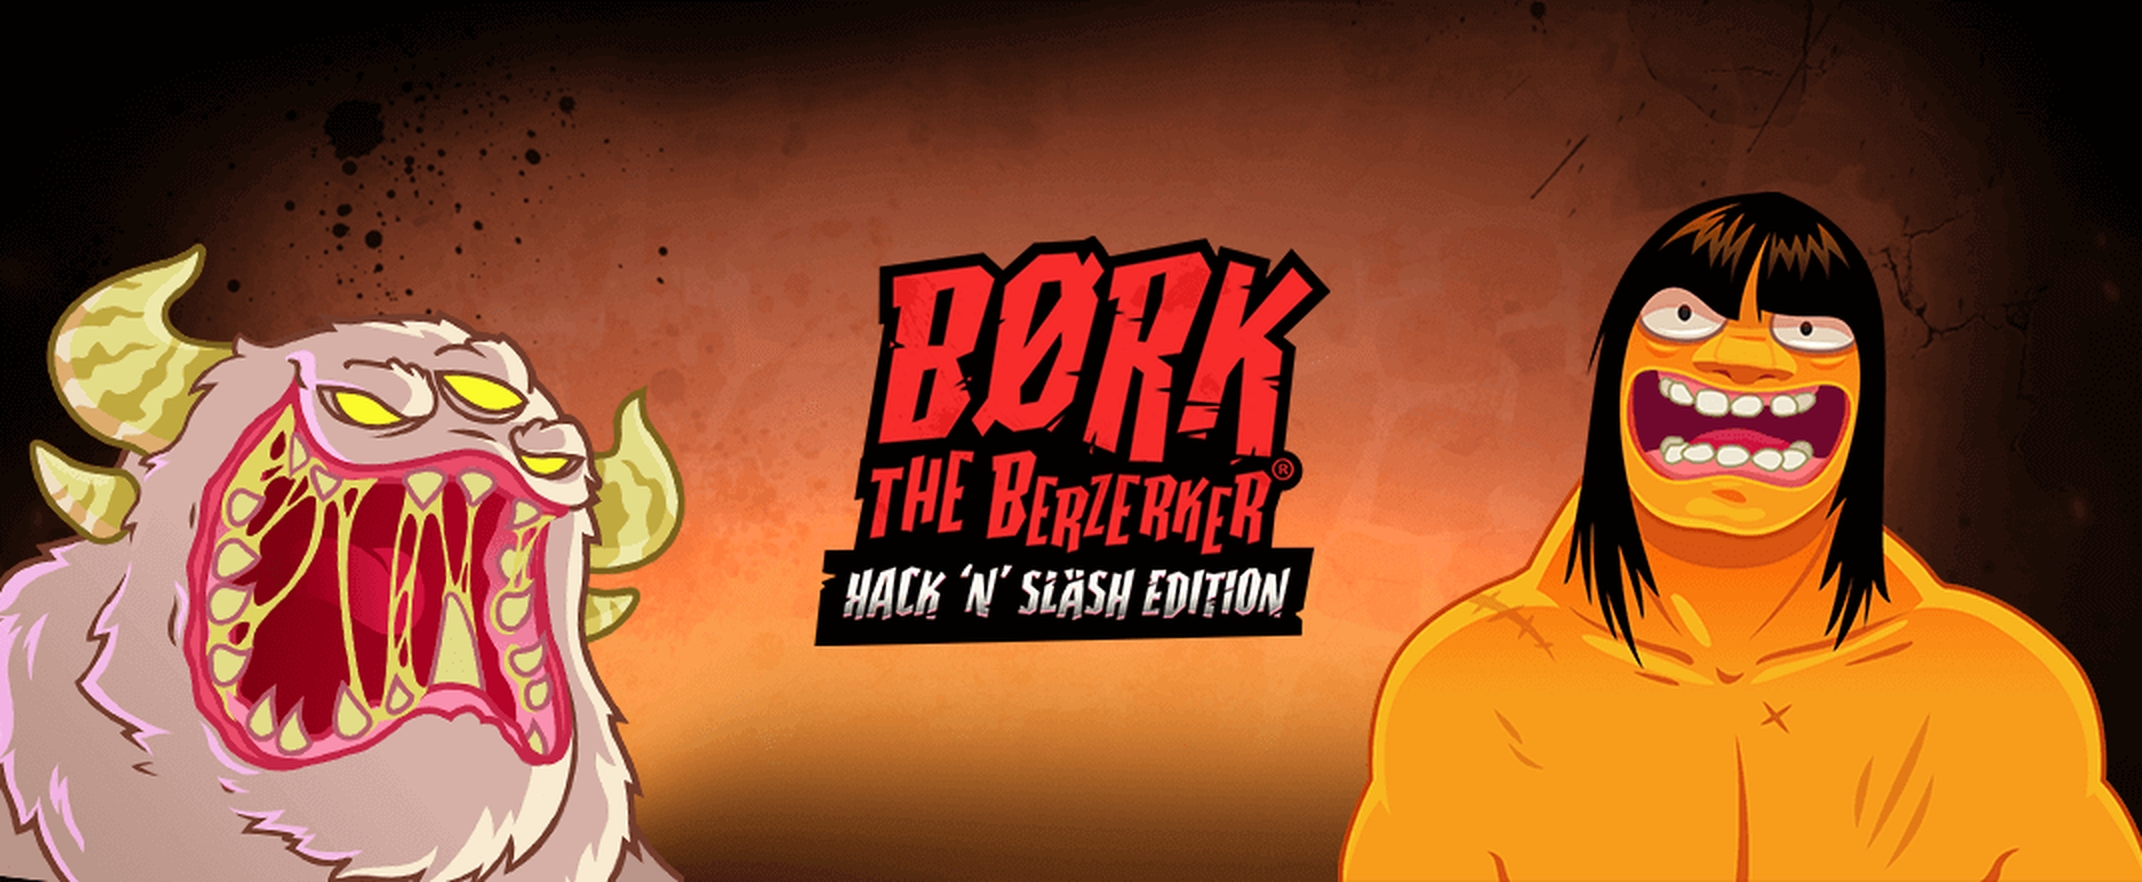 Børk the Berzerker – Hack 'N' Slash Edition demo